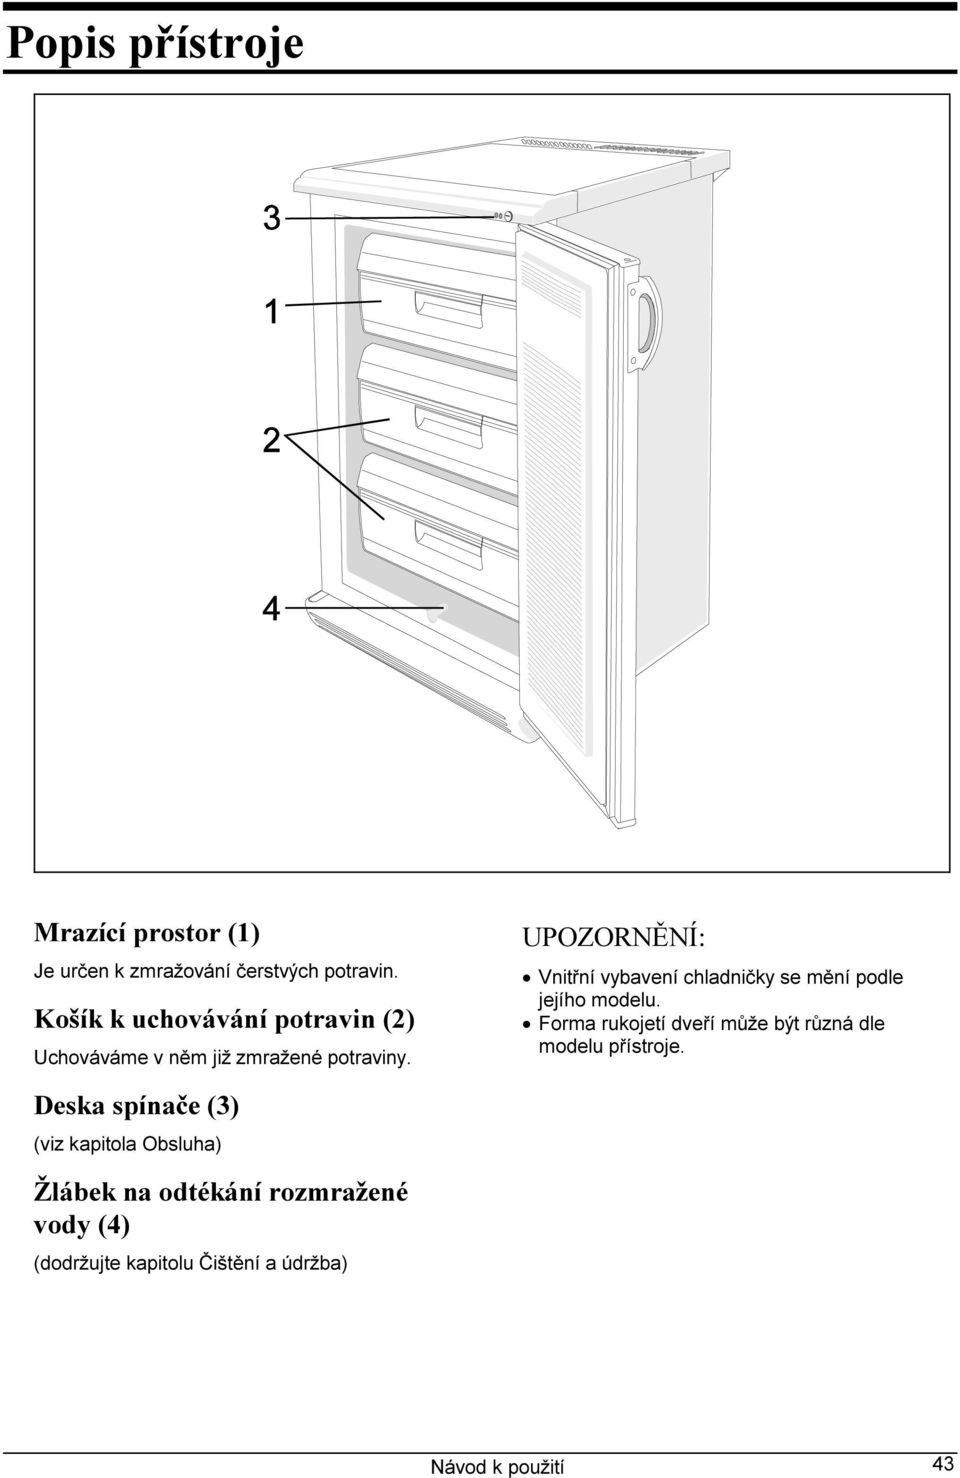 UPOZORNĚNÍ: Vnitřní vybavení chladničky se mění podle jejího modelu.